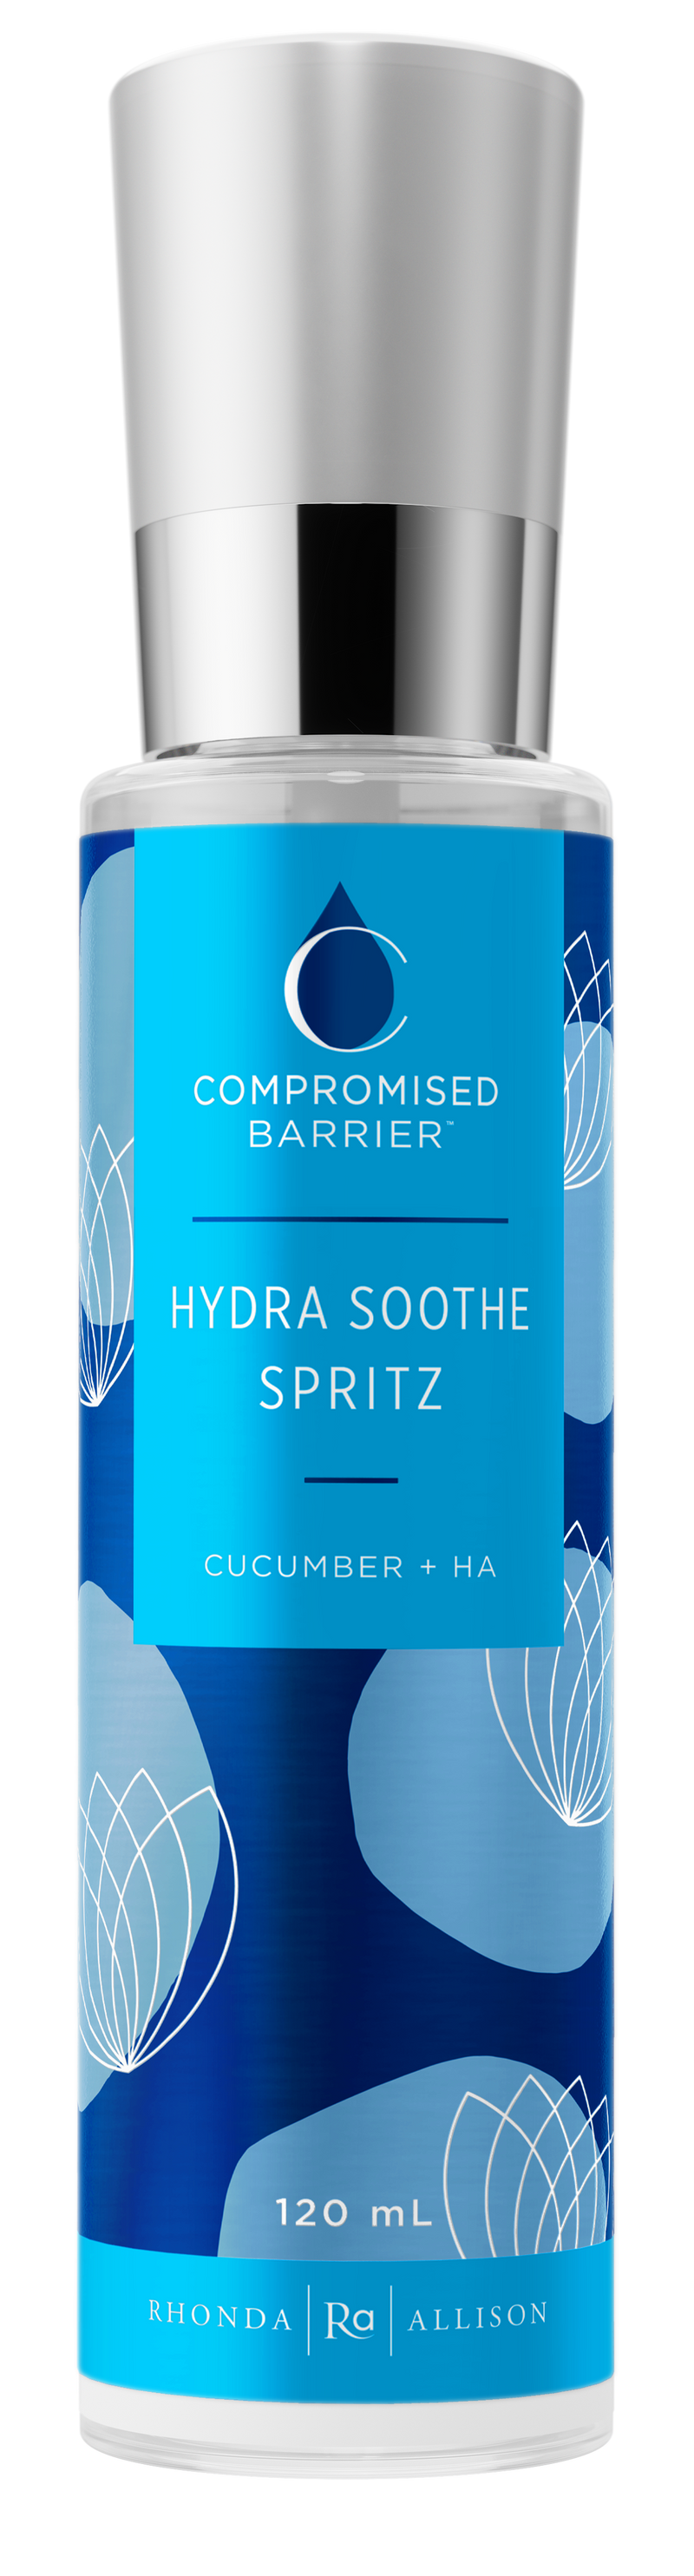 Hydra Soothe Spritz